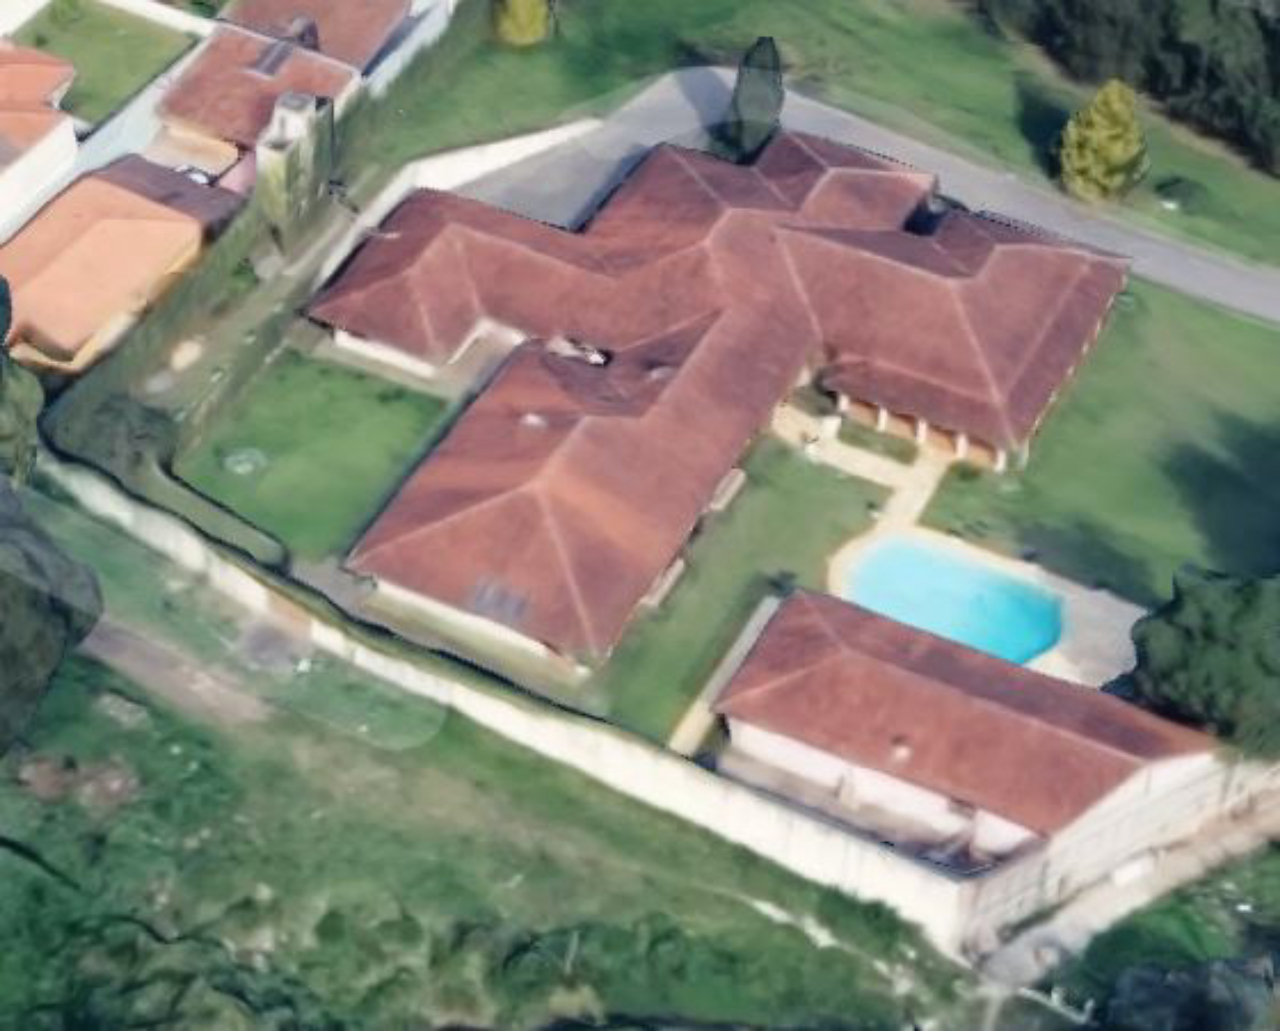 Perspectiva aérea da mansão no Pilarzinho. Foto: Reprodução/Google Maps